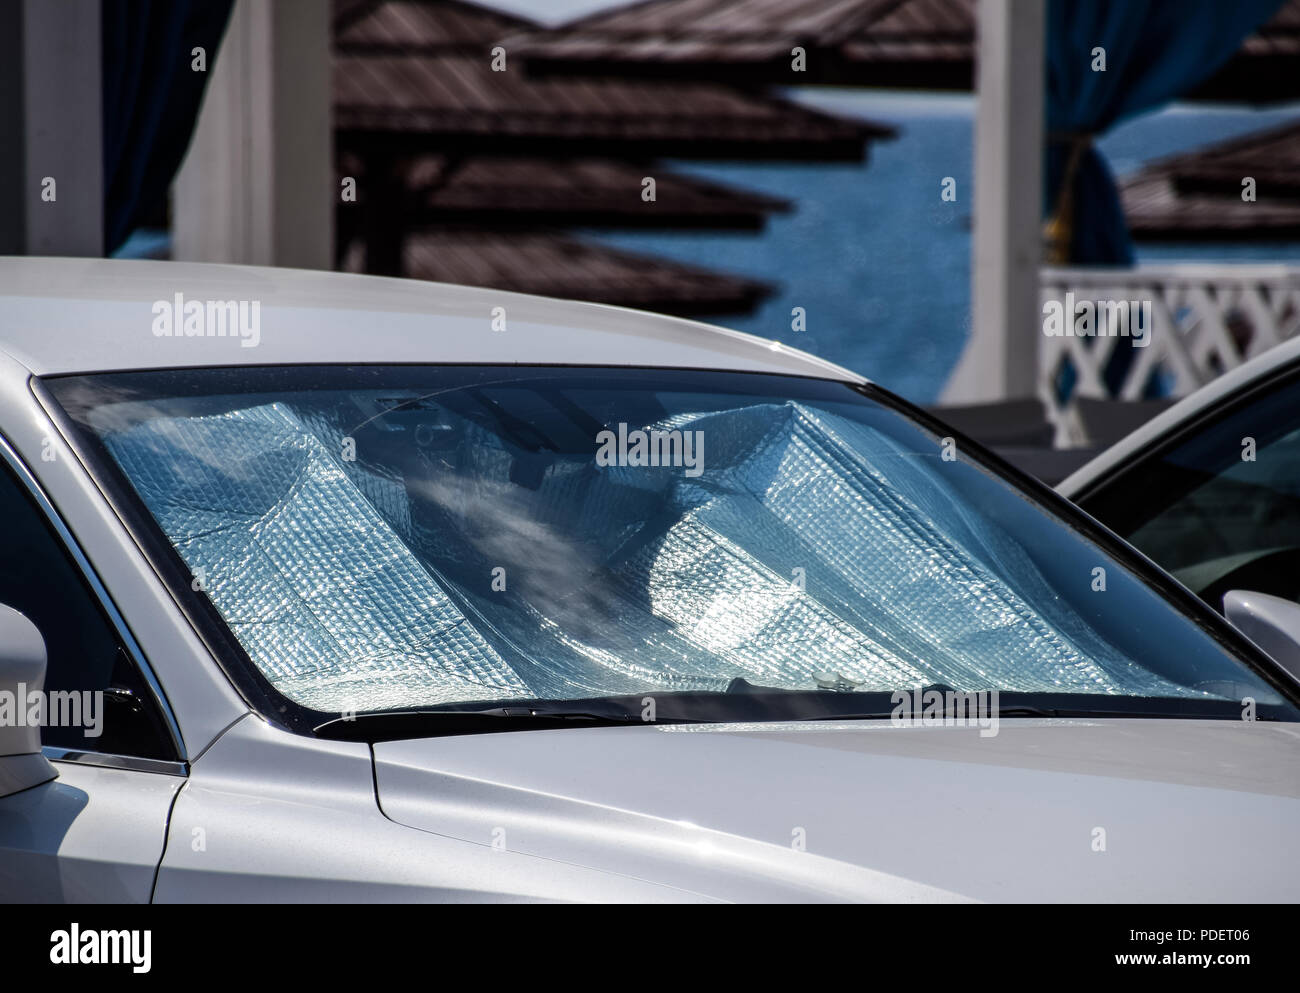 Sonne-Reflektor Windschutzscheibe. Schutz des Bereichs Auto vor direkter  Sonneneinstrahlung Stockfotografie - Alamy